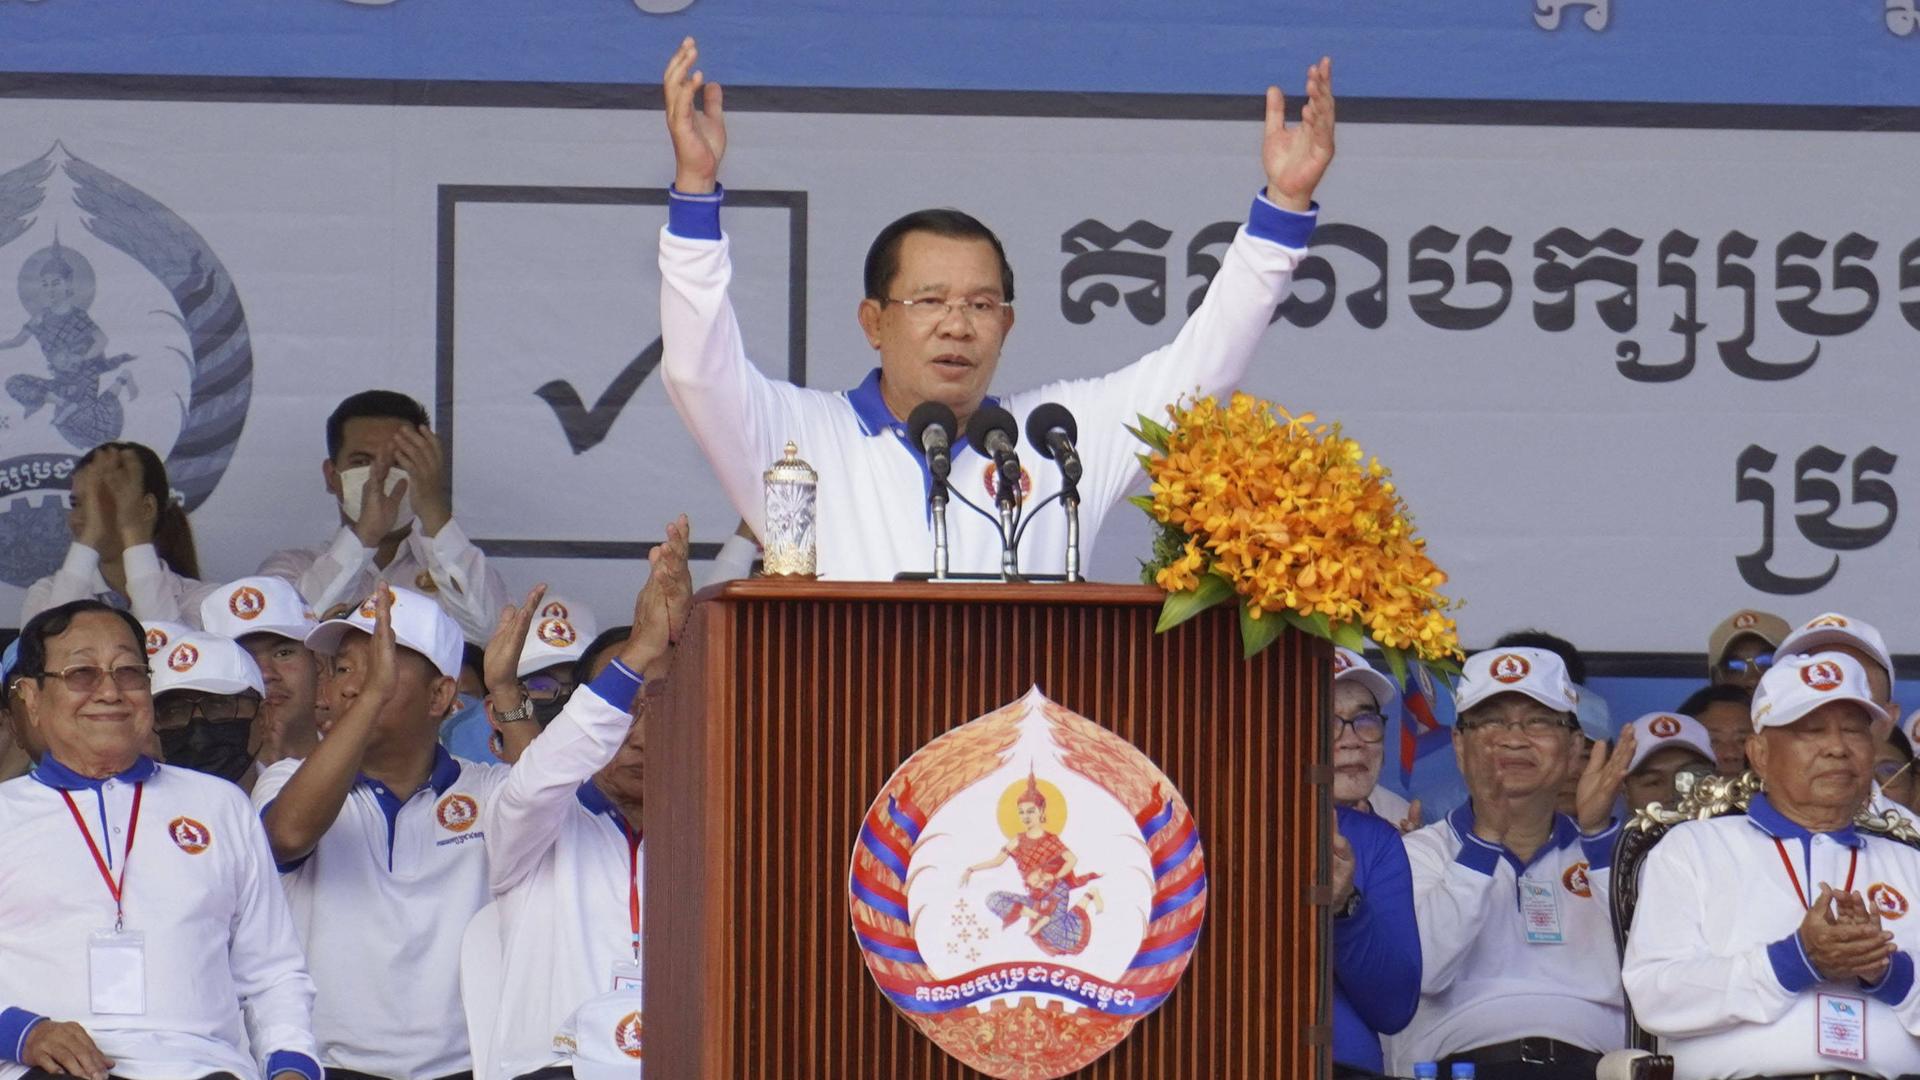 Der kambodschanische Premierminister Hun Sen bei einer Wahlkampfveranstaltung in Phnom Penh.